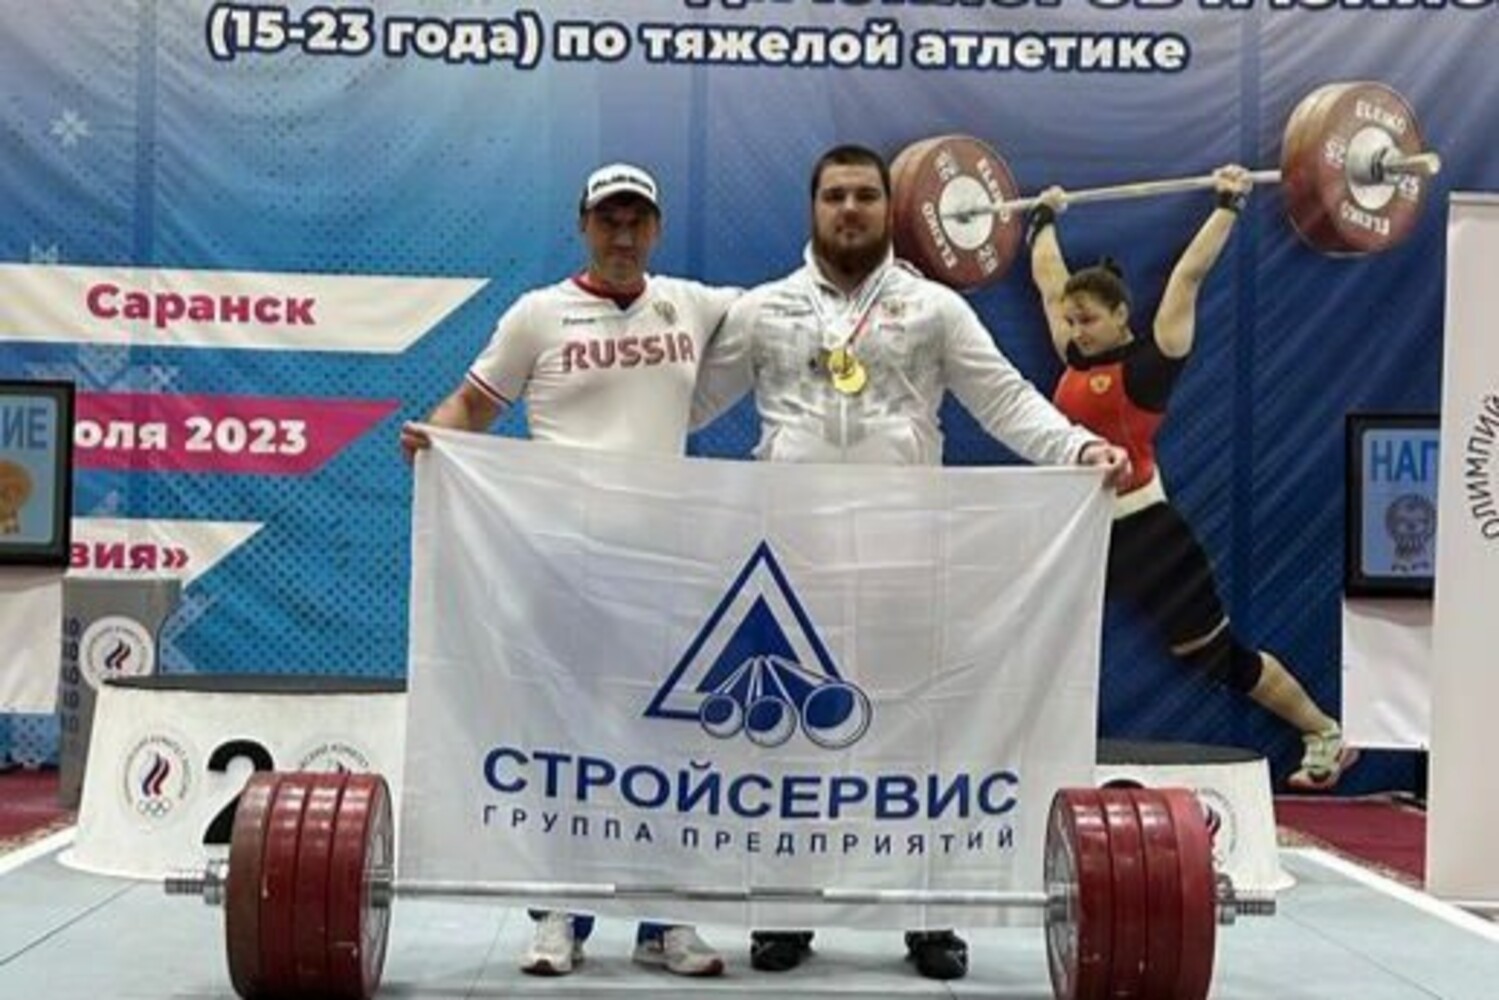 Стройсервис наградил кузбасских тяжелоатлетов-рекордсменов, победивших на всероссийских соревнованиях. Стройсервис